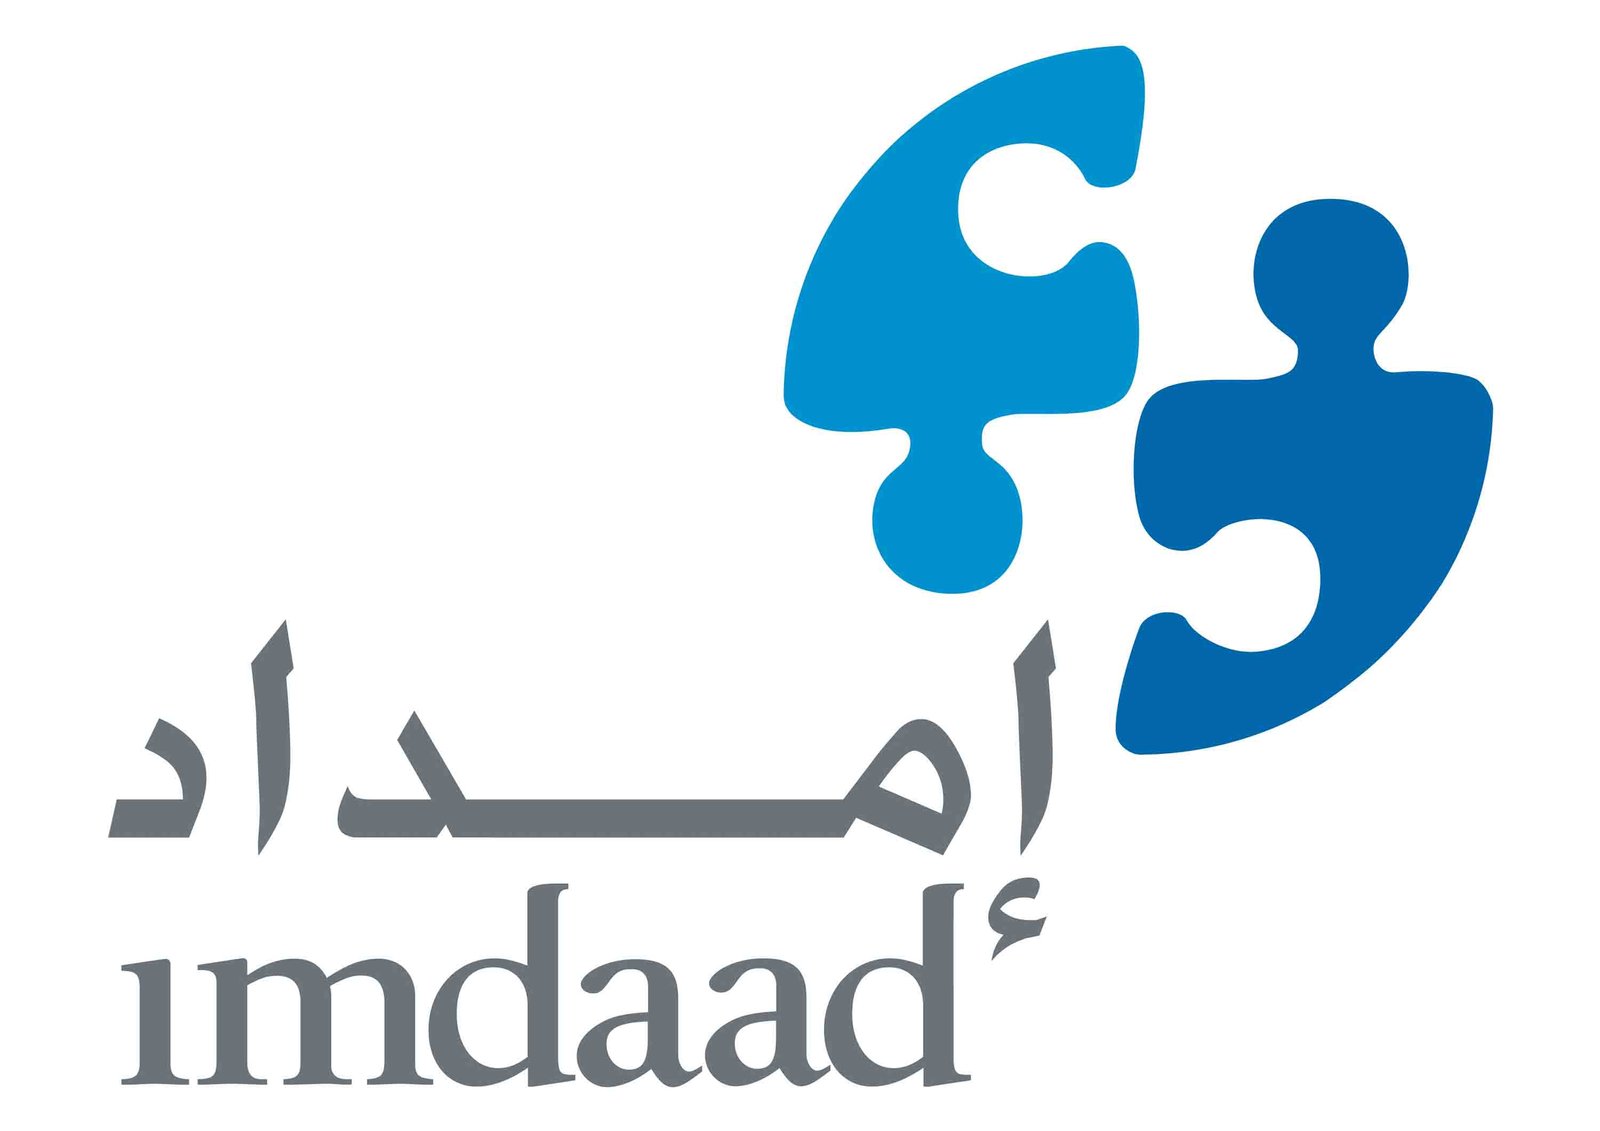 Imdaad_Bilingual_logo